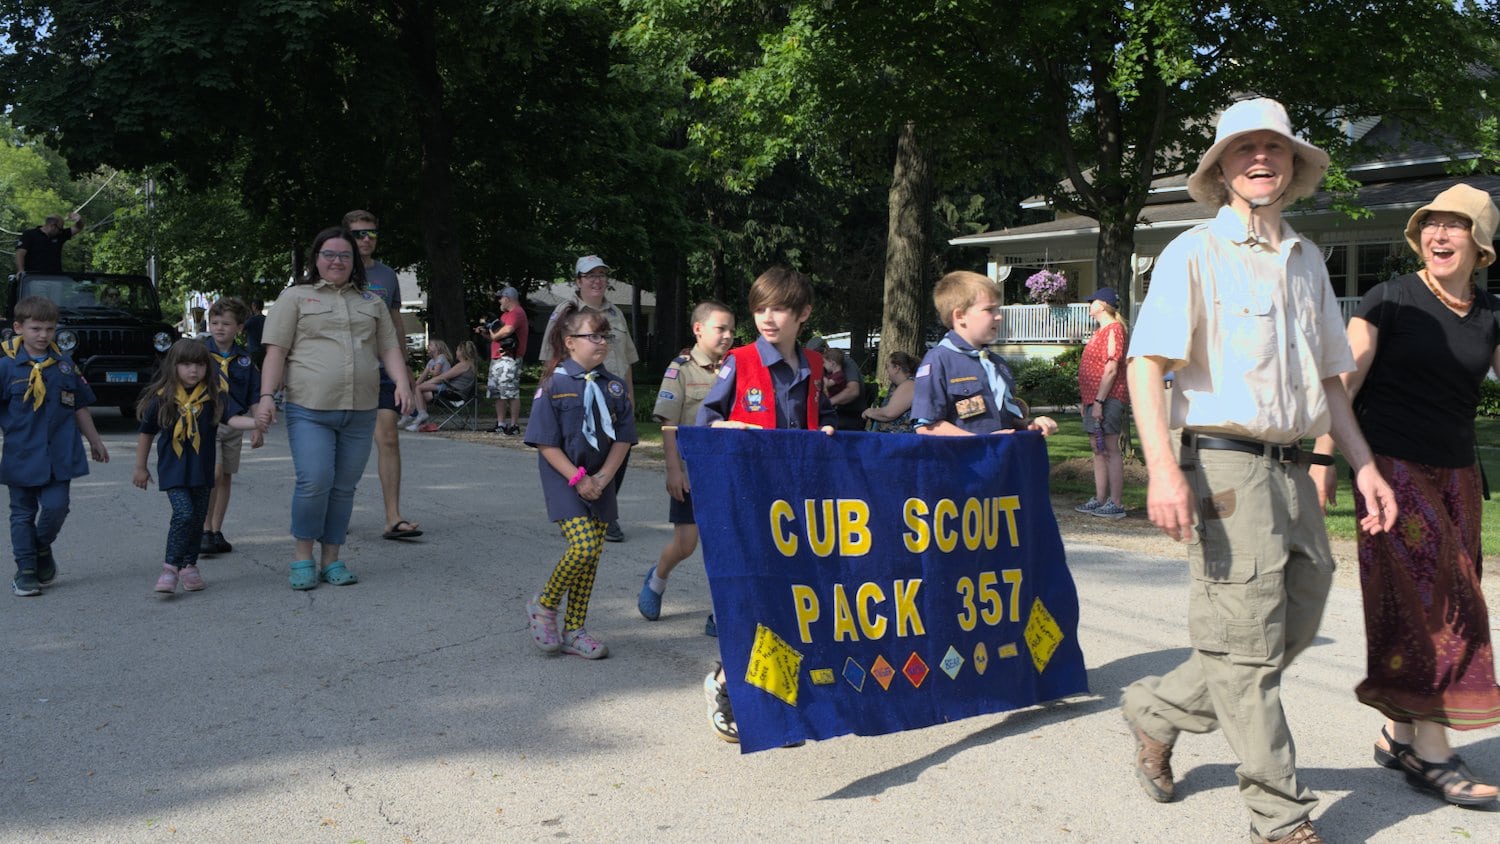 Cub Scout Pack 357.